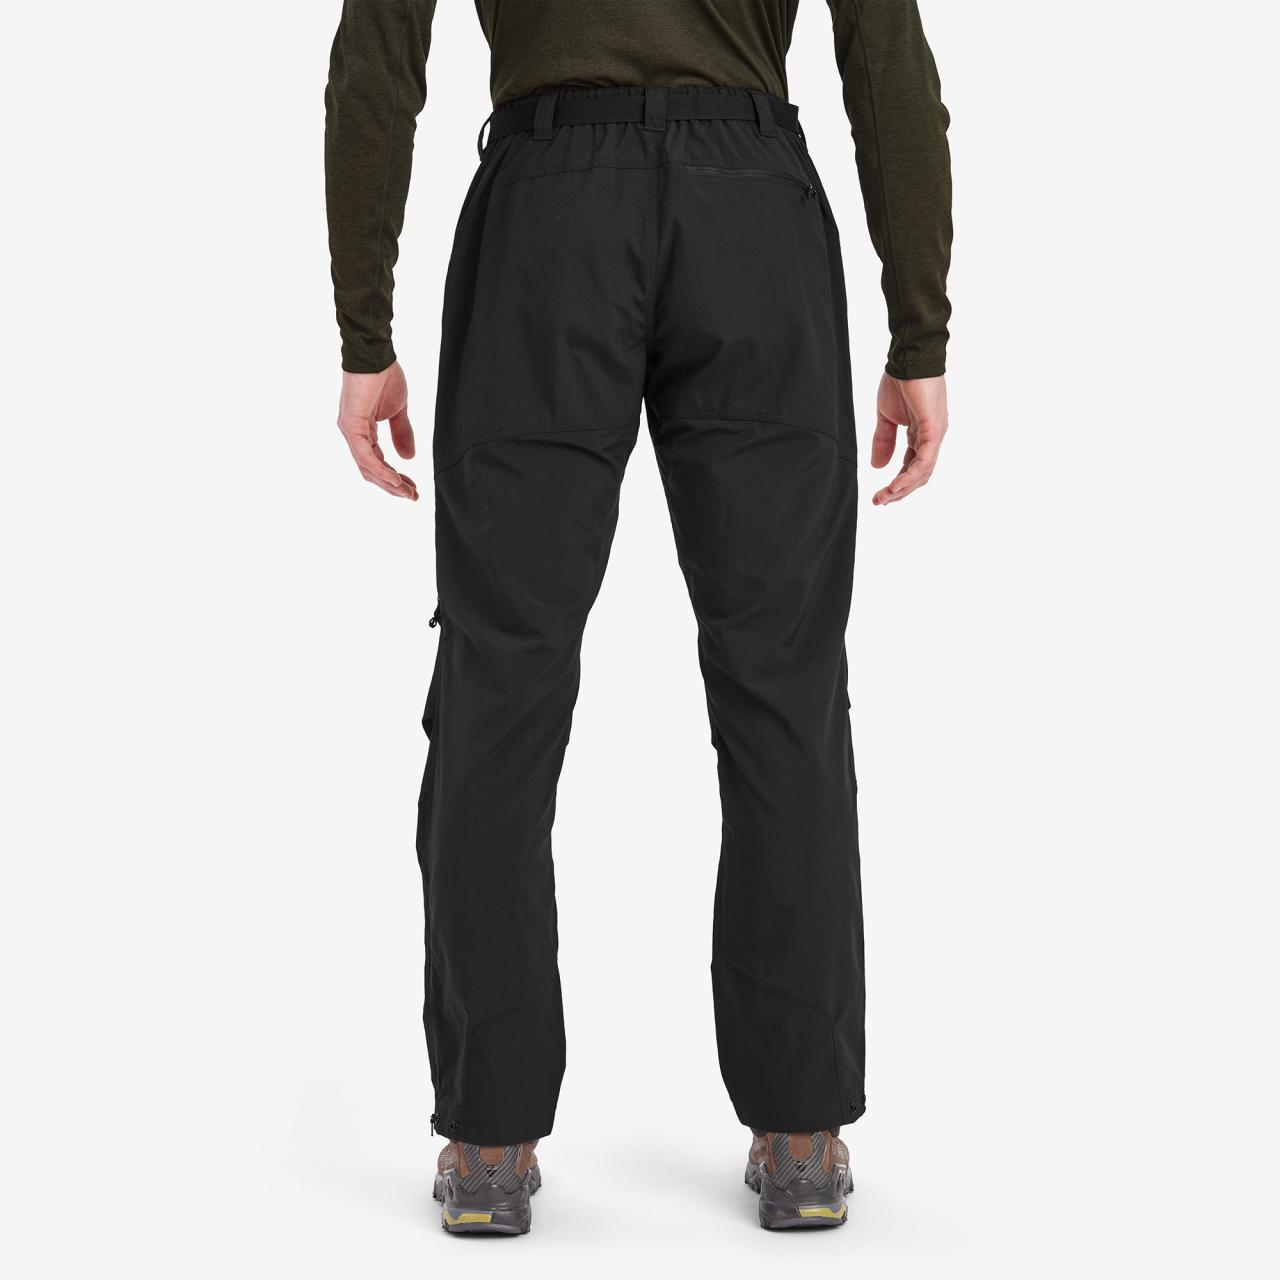 TERRA PANTS SHORT LEG-BLACK-36/XL pánské kalhoty černé